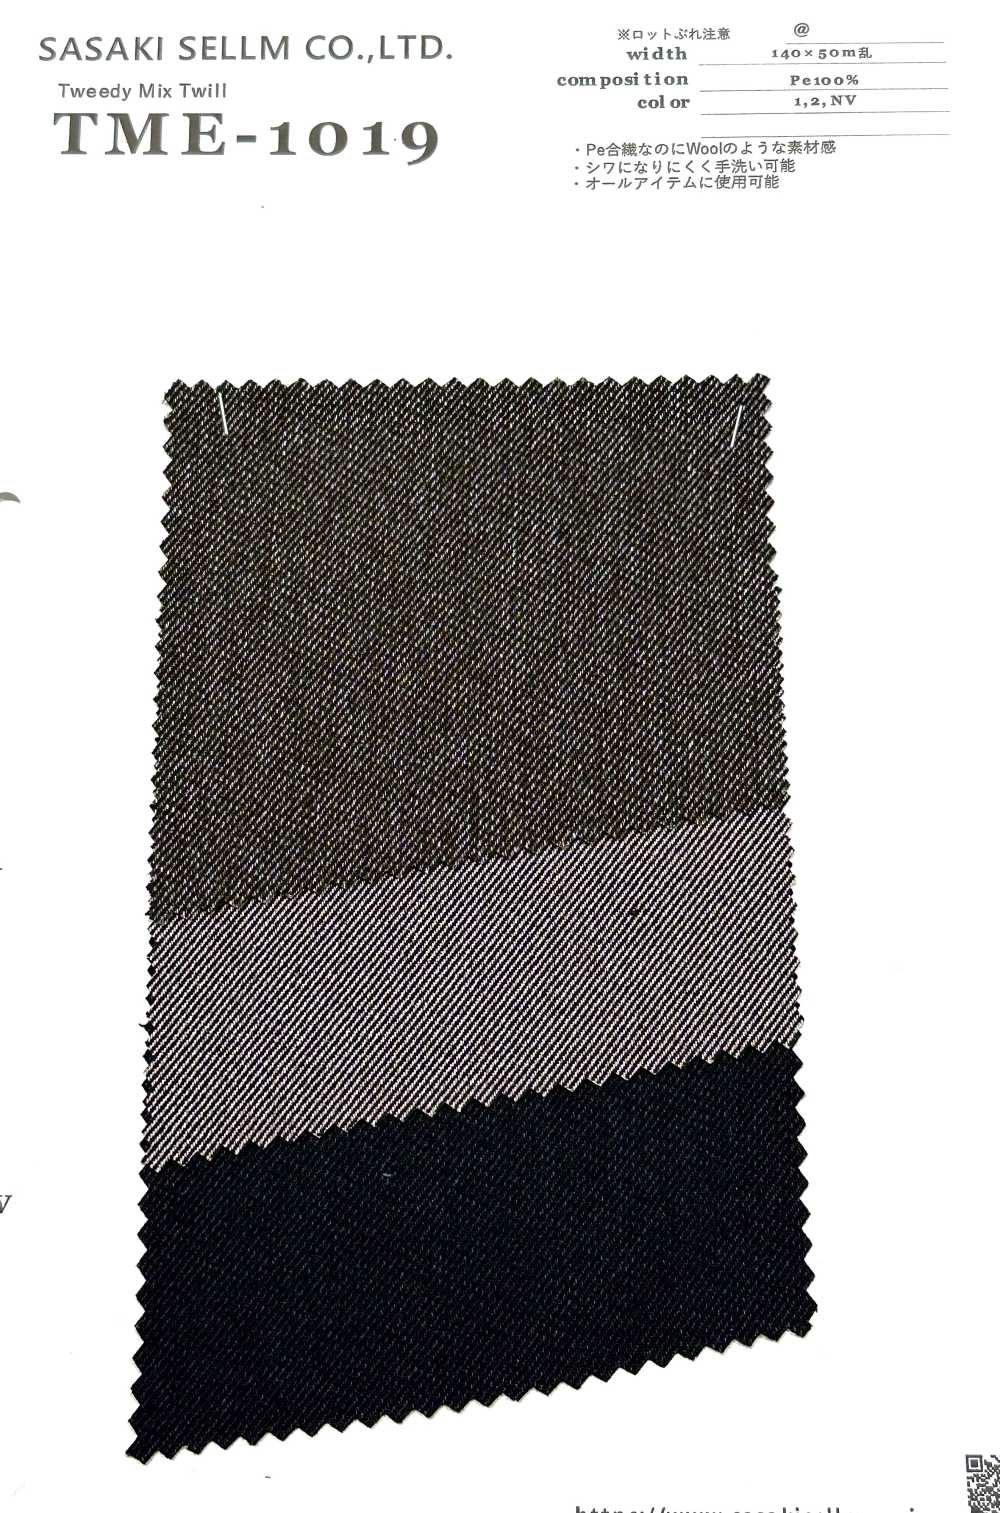 TME-1019 Tweedy Mix Twill[Textile / Fabric] SASAKISELLM